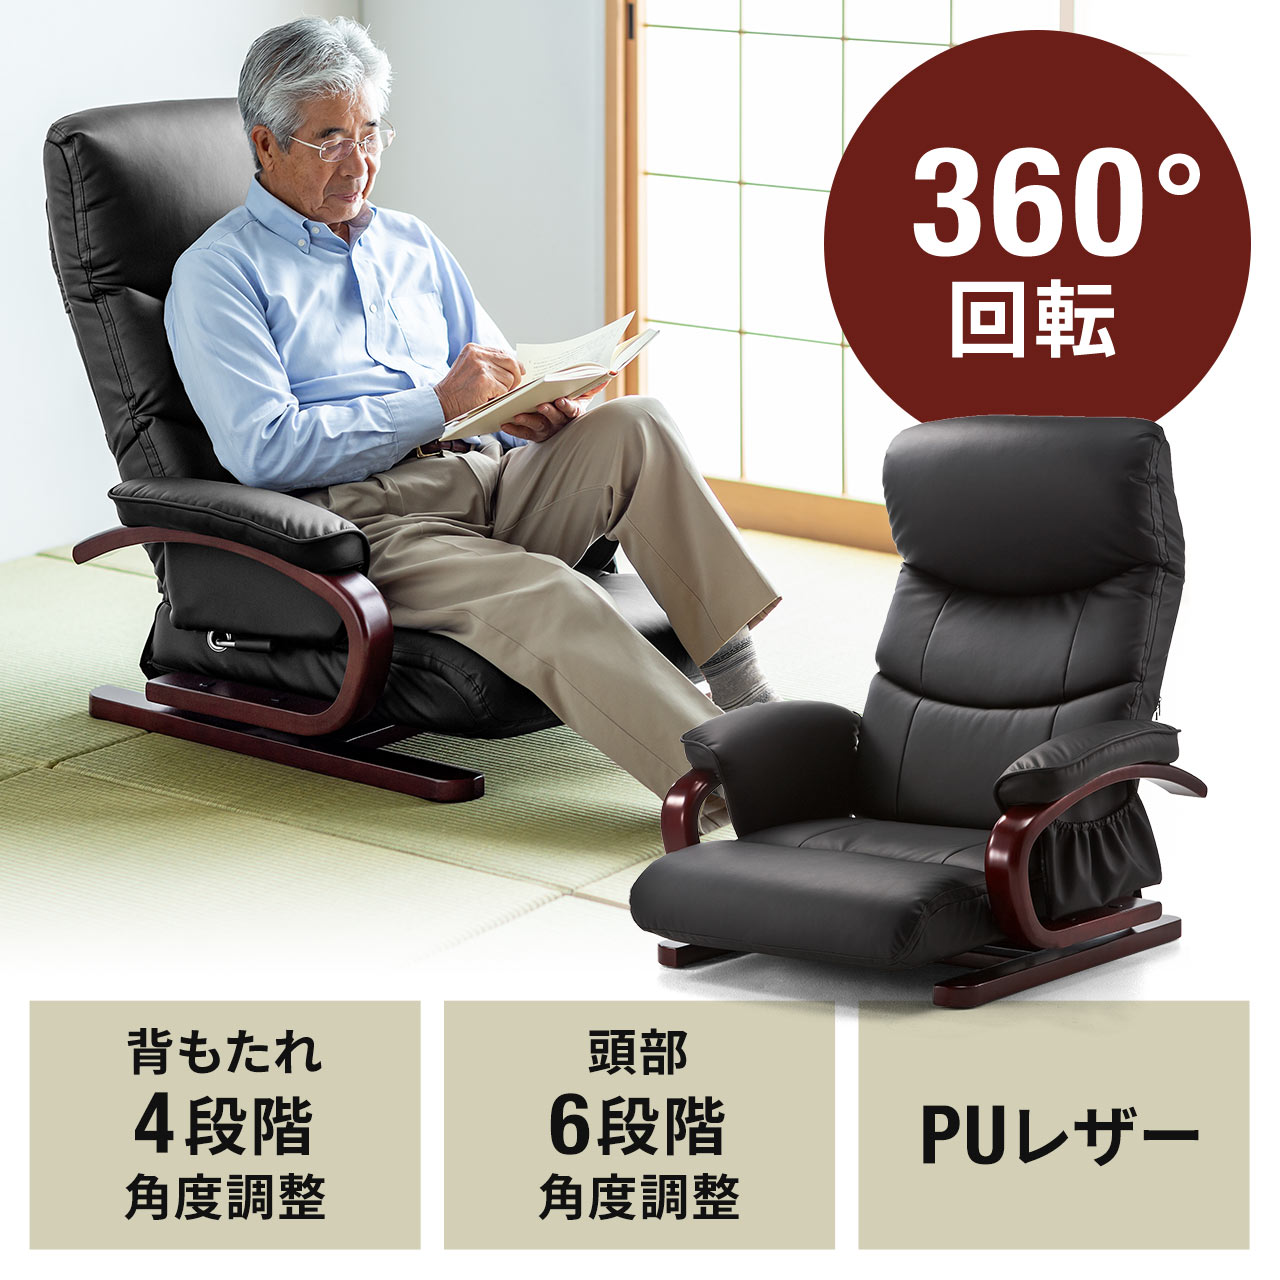 回転座椅子 ハイバック リクライニング PUレザー 肘付き 小物収納ポケット 360°回転 4段階角度調整 150-SNC112 |サンワダイレクト